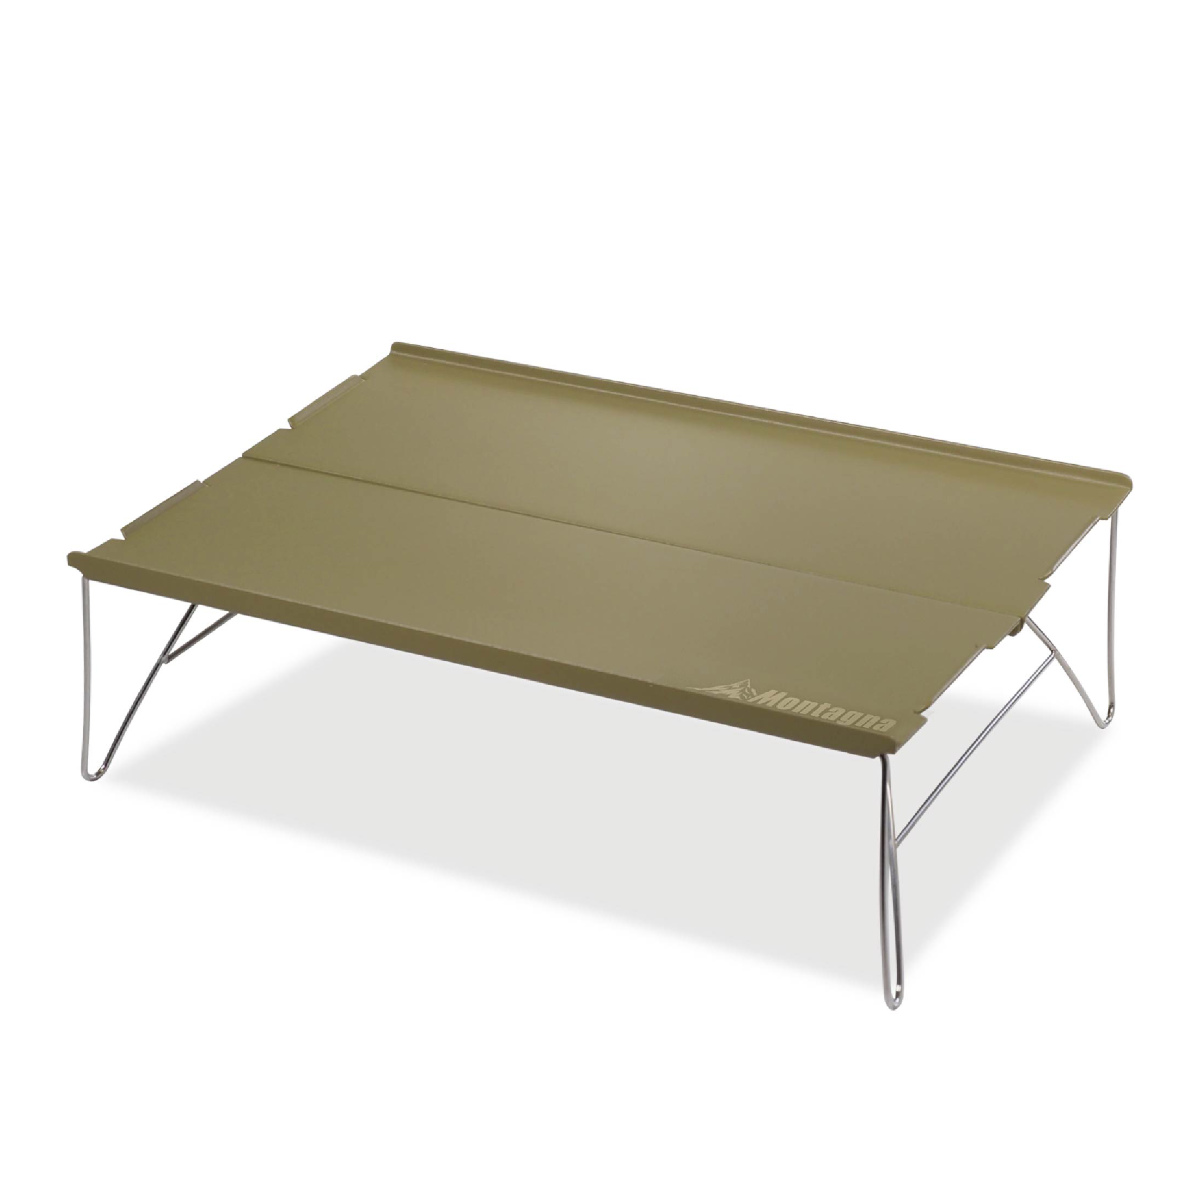 アウトドアテーブル 組立式シンプルローテーブル 35×25×11cm